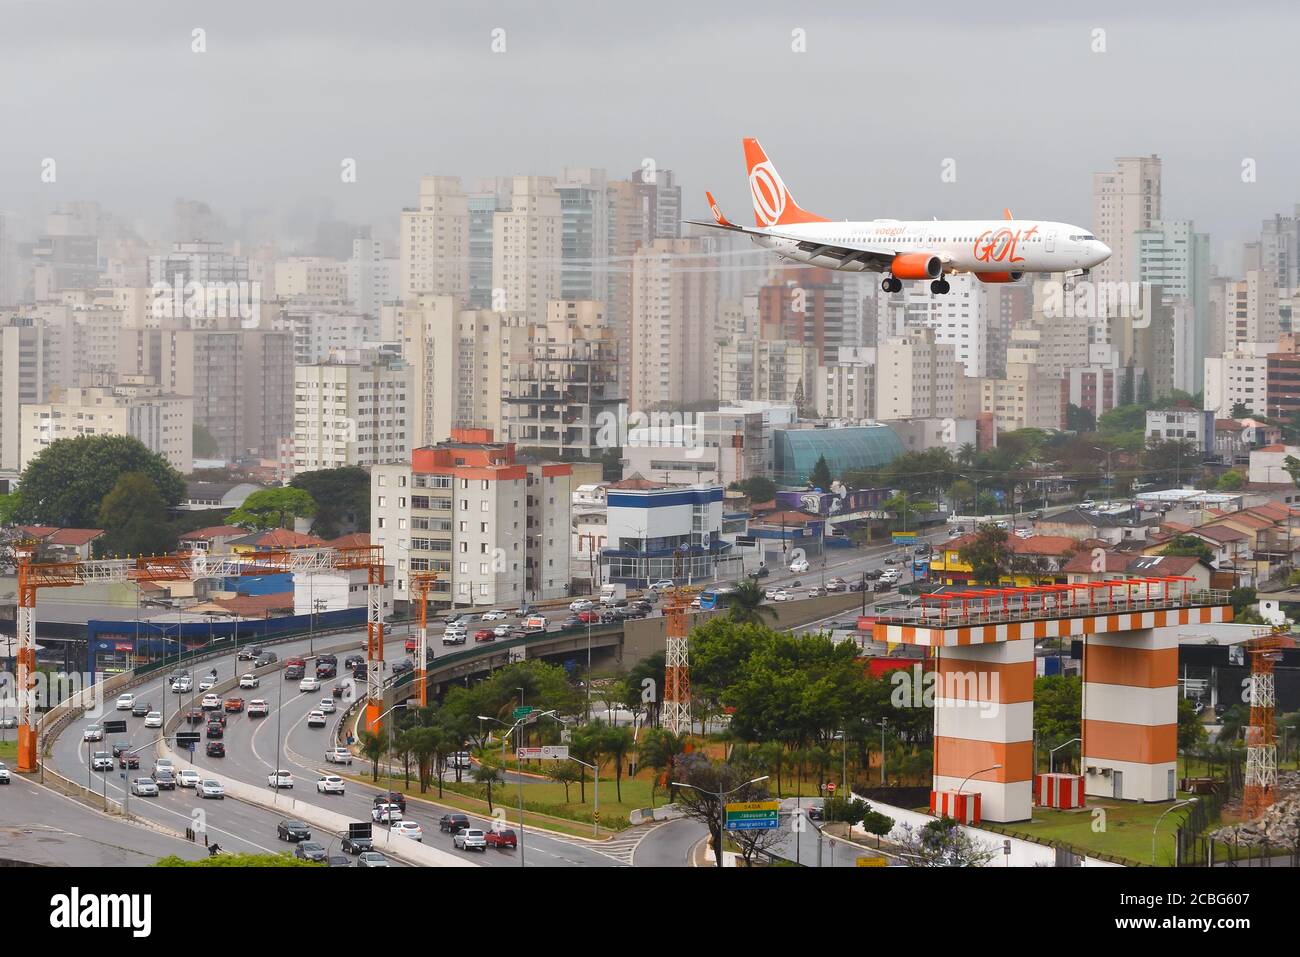 Gol Airlines Boeing 737 sull'approccio finale all'aeroporto di Congonhas a Sao Paulo, Brasile. Aereo su Washington Luis Avenue. Aviazione brasiliana. Foto Stock